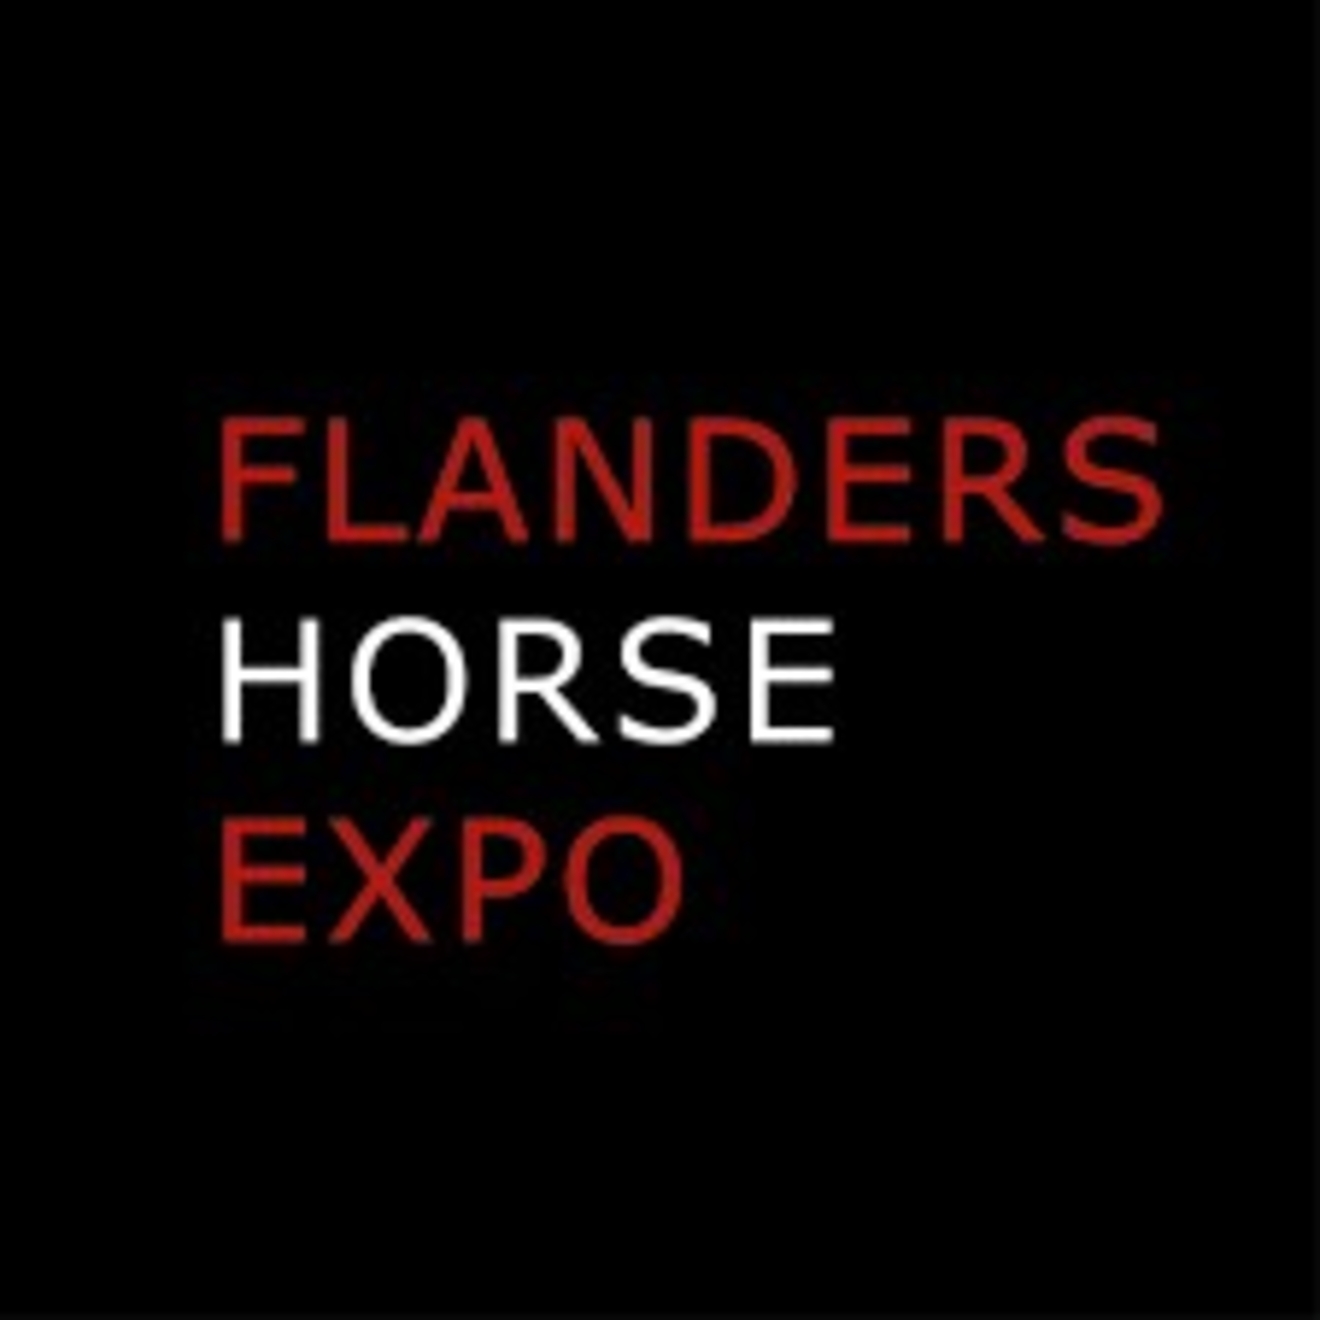 Juridisch advies of hulp nodig met de identificatie en registratie van uw paardachtige? Kom naar onze stand op Flanders Horse Expo!